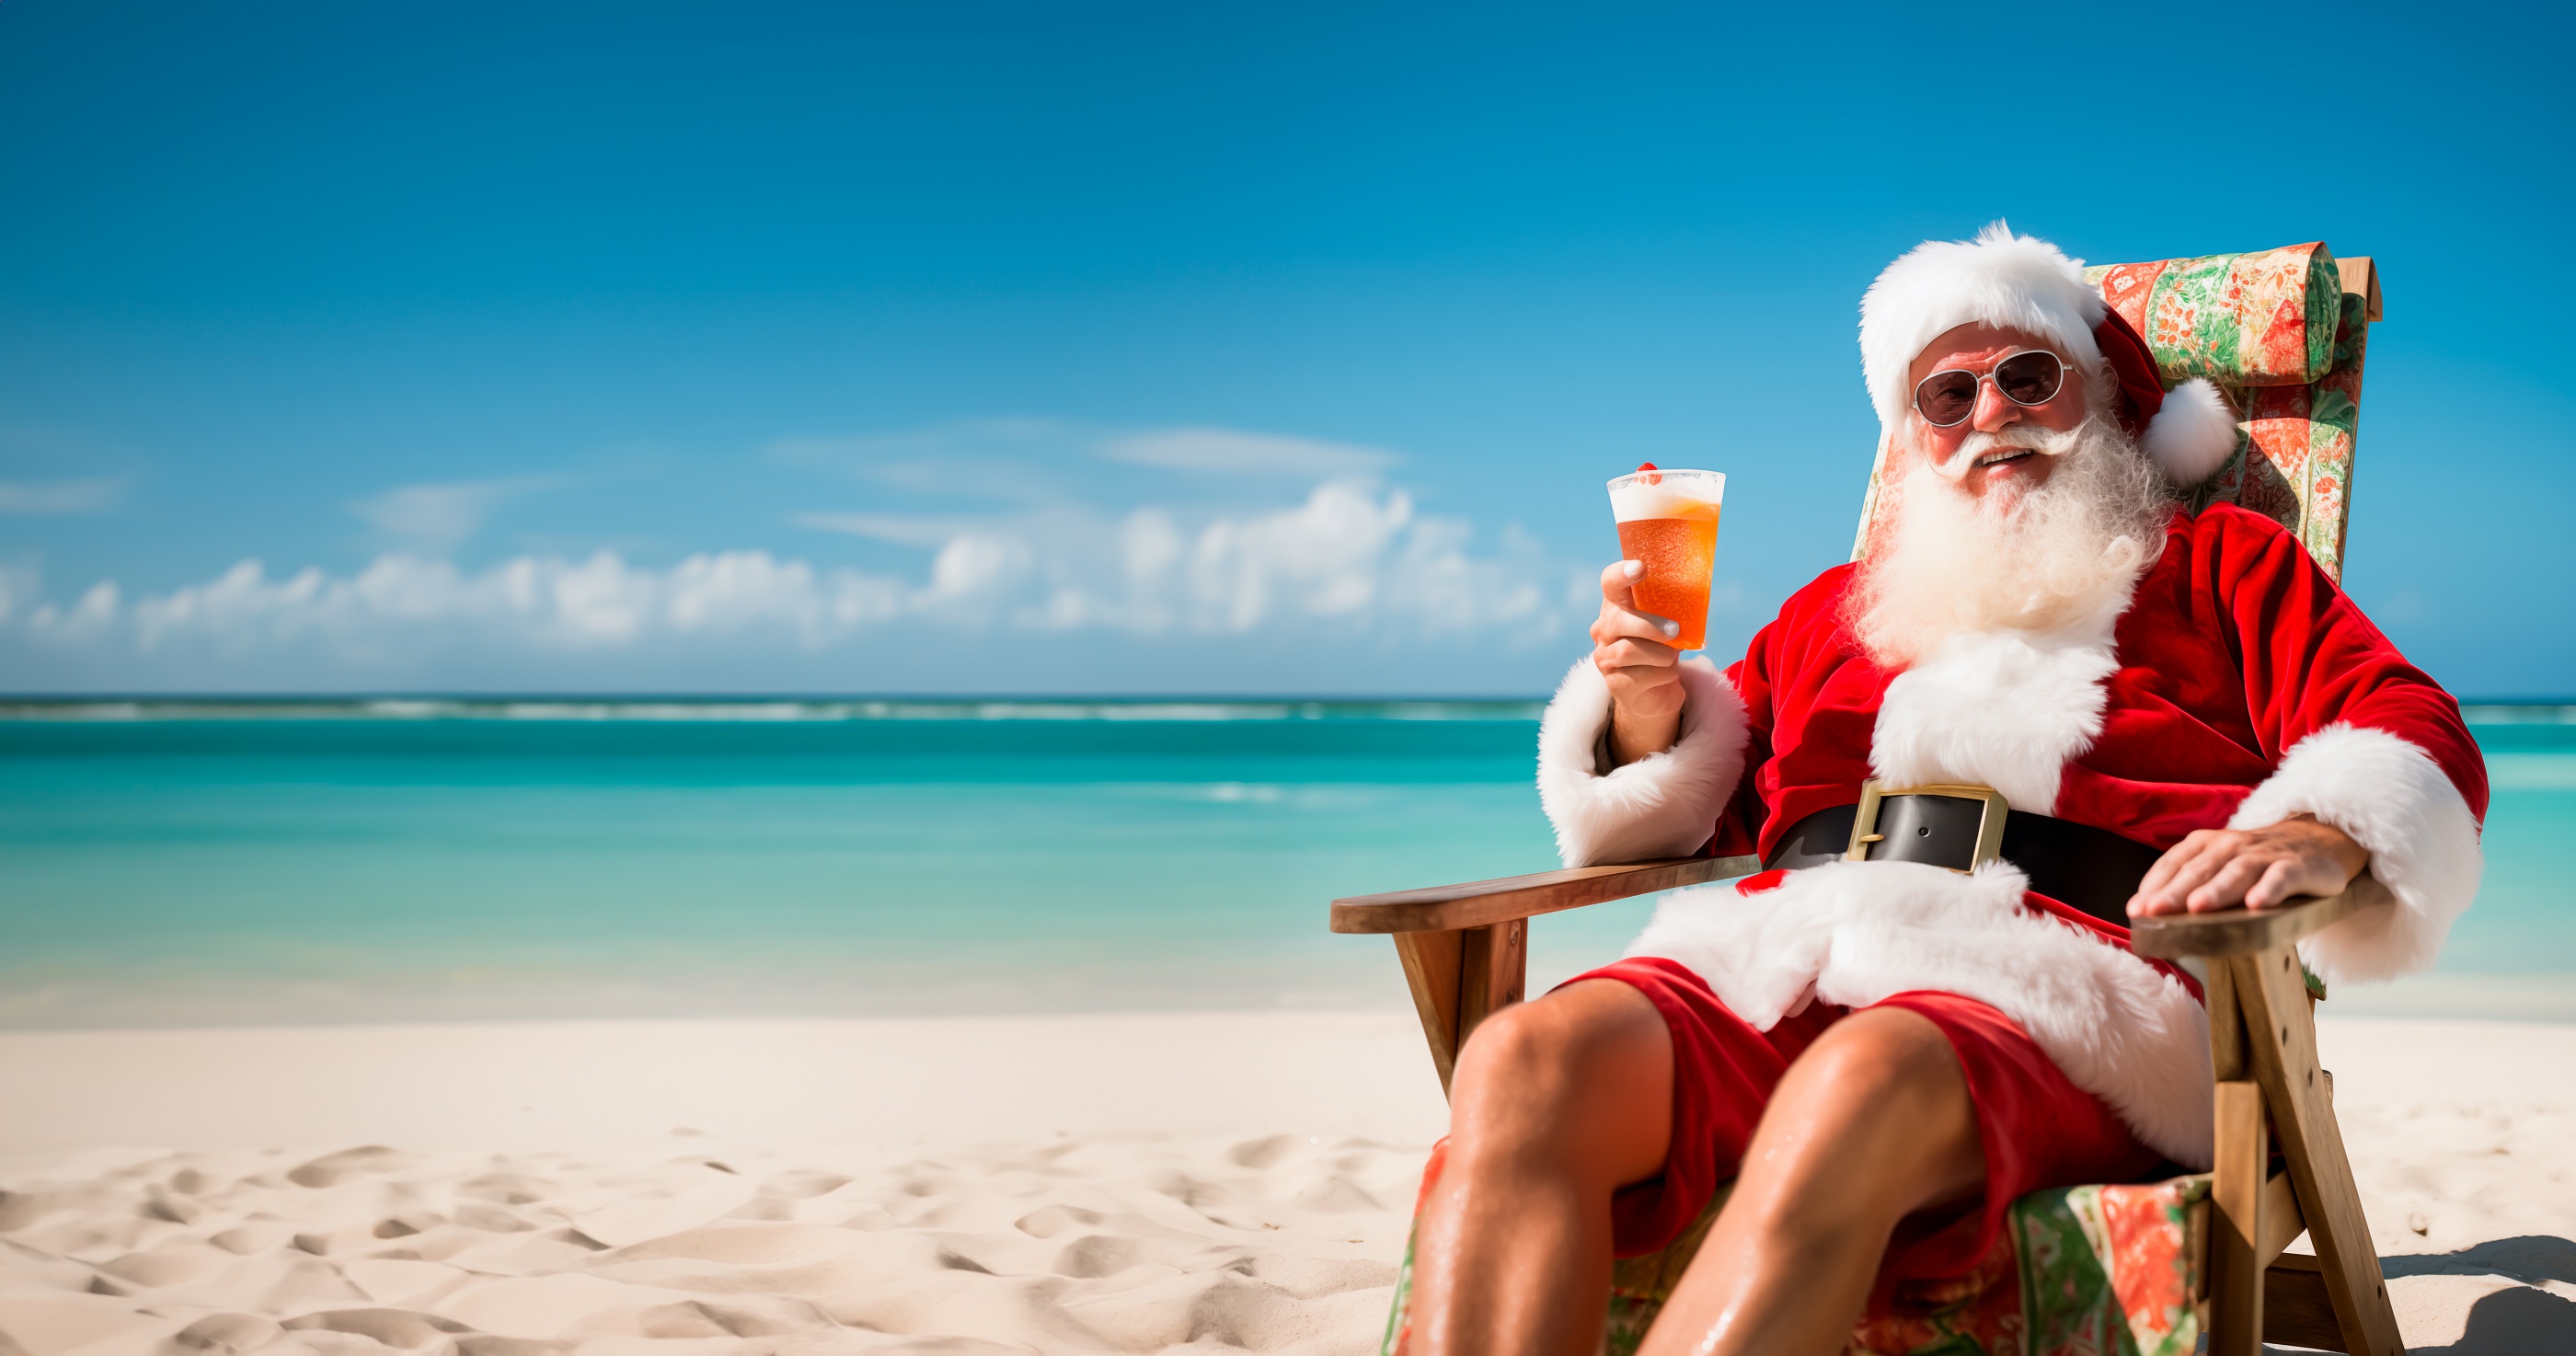 Le Père Noël risque d'avoir trop chaud le 25 décembre ! © Henjon, Adobe Stock